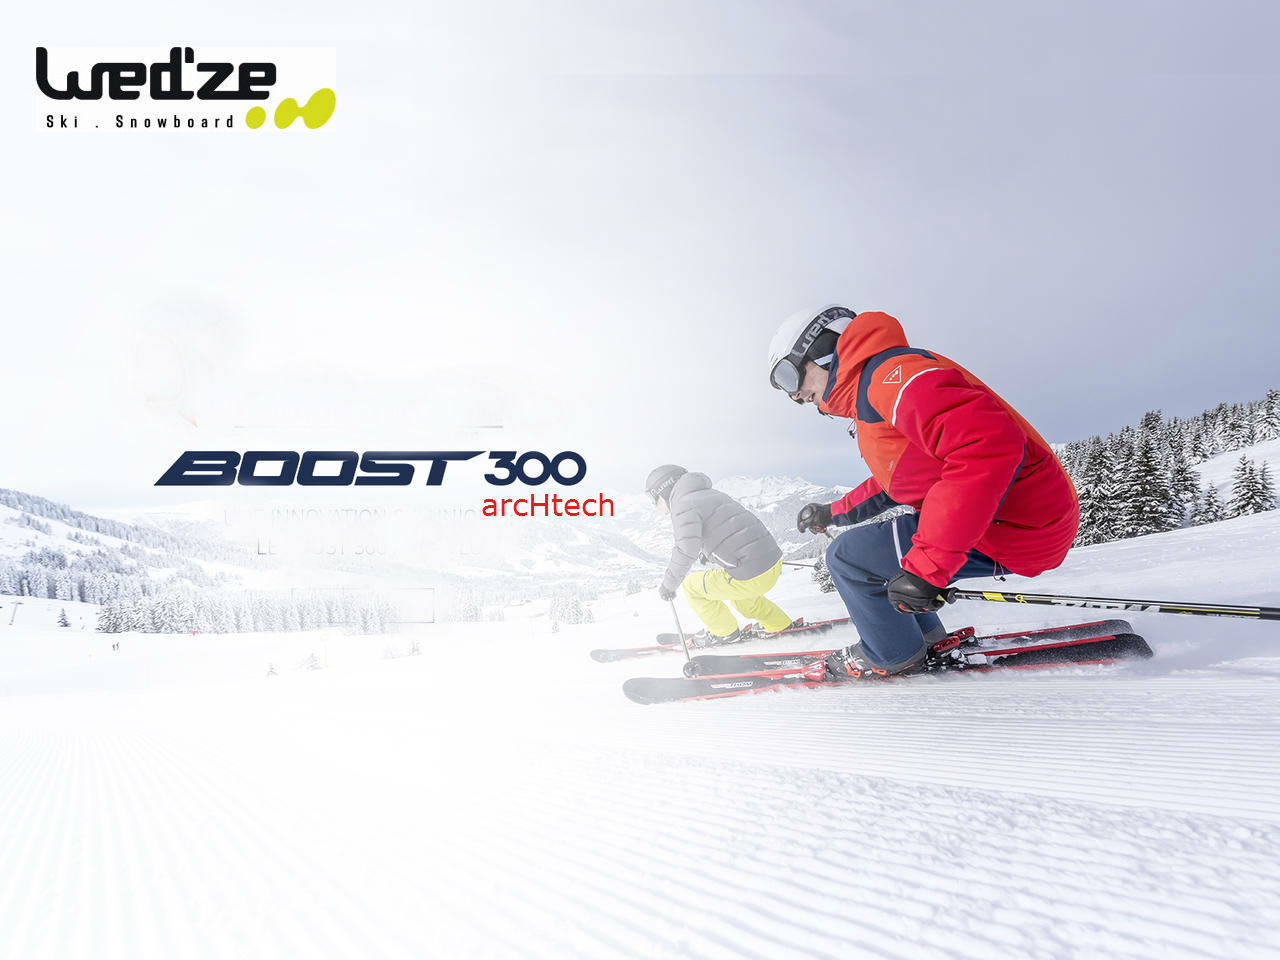 Boost 300 arcHtech de Wed´ze, un esquí de iniciación con prestaciones y precio irresistibles